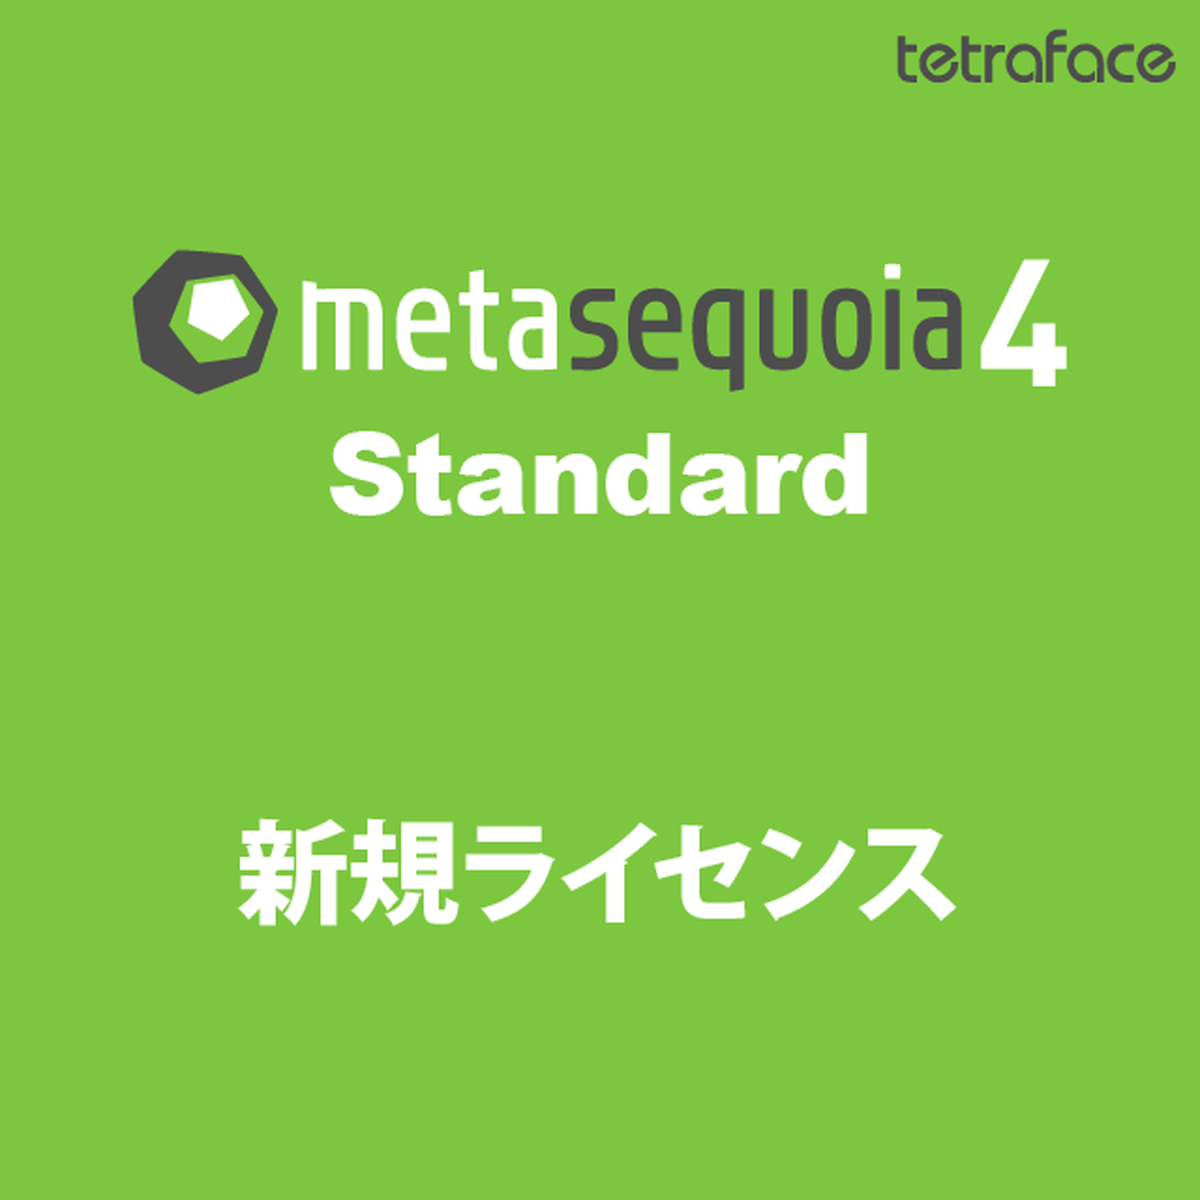 Metasequoia 4.8.6 for ios instal